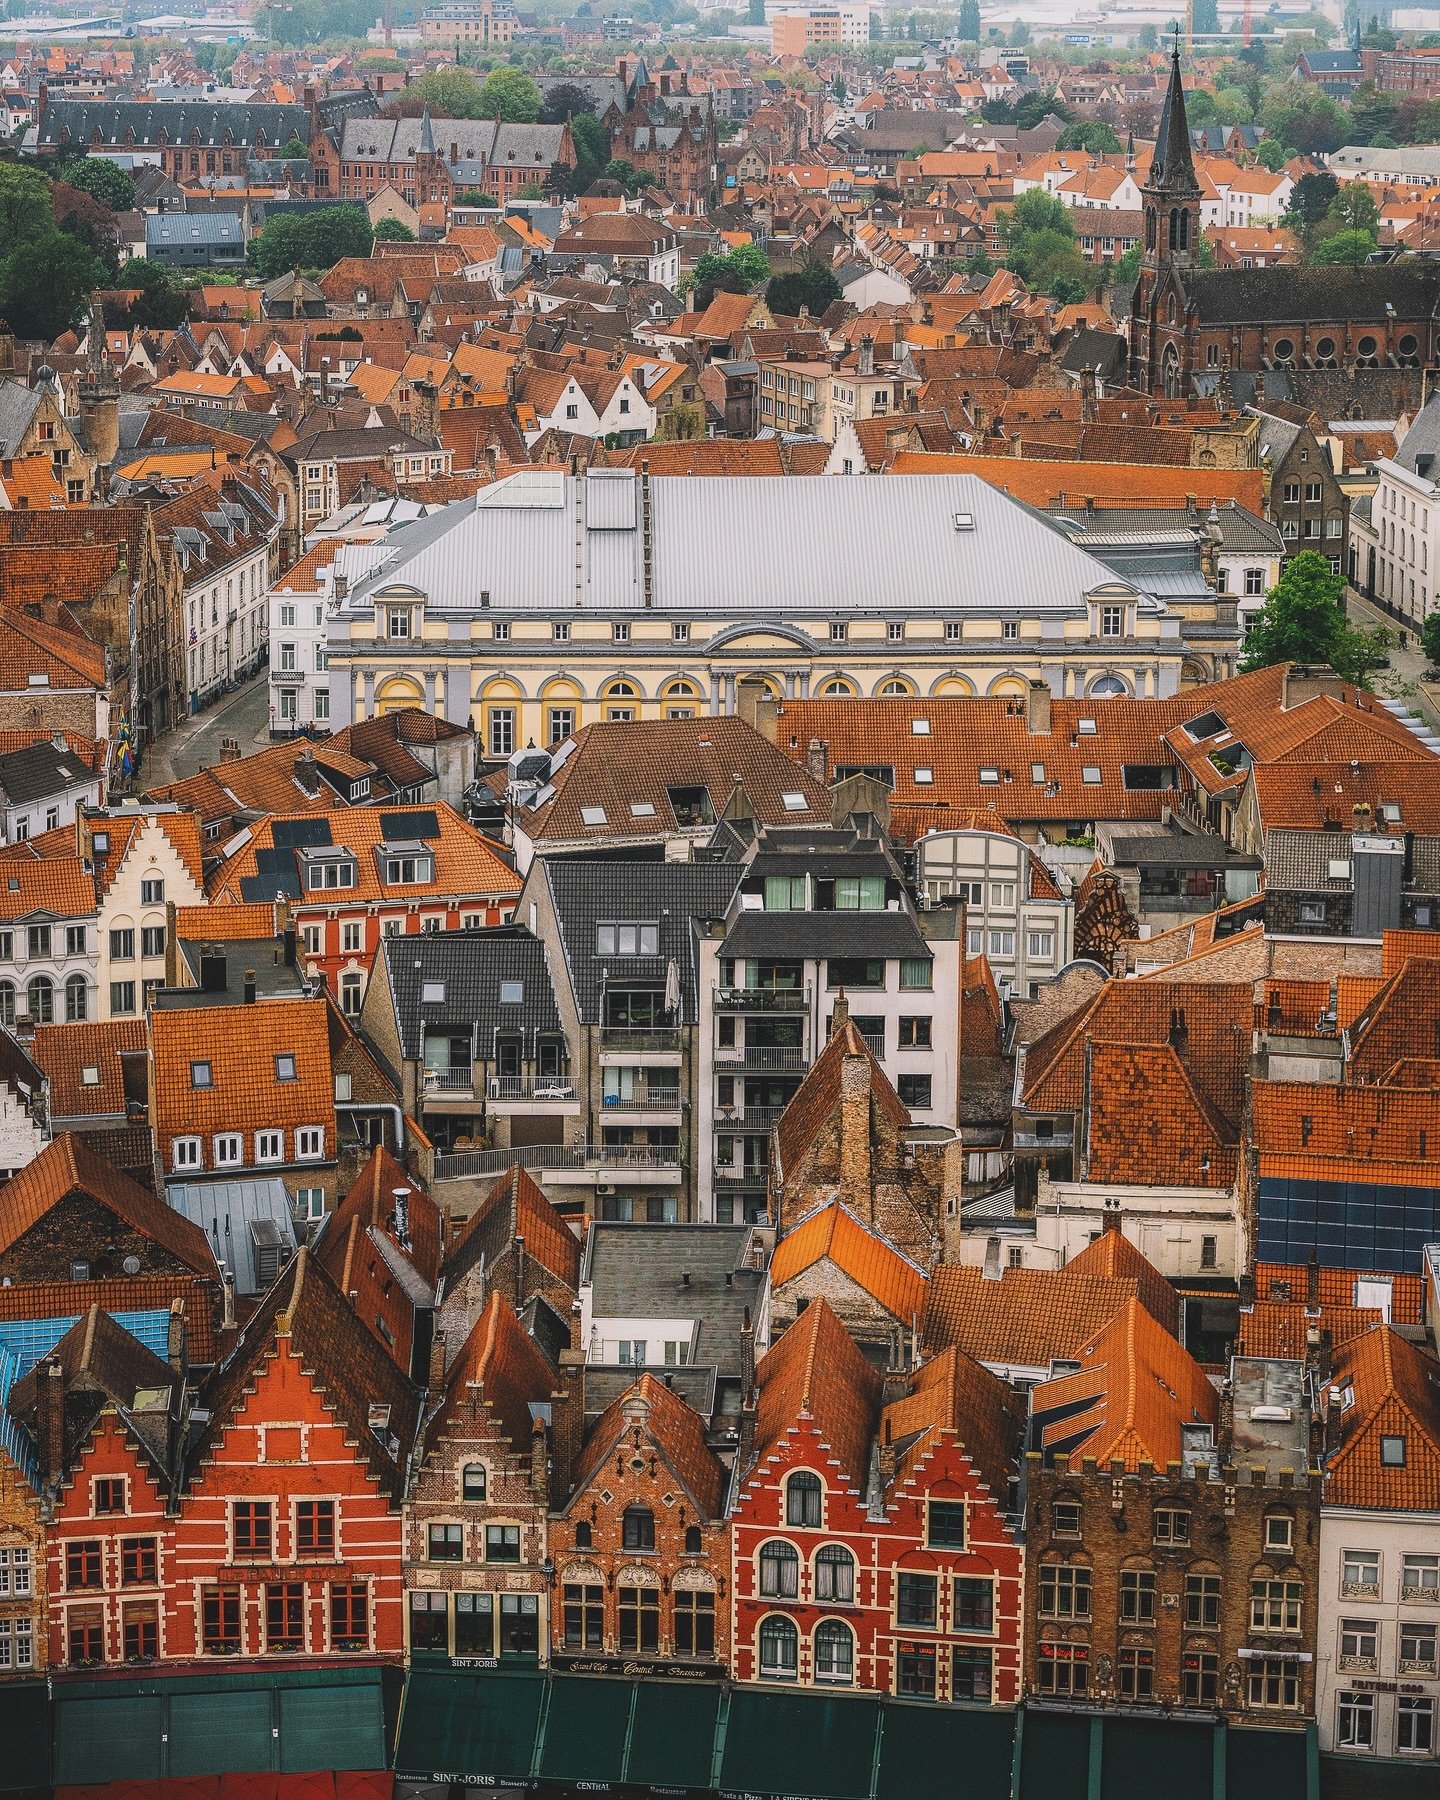 Hello les amis 😊⁣
⁣
[🇨🇵] La jolie ville de Bruges depuis les hauteurs du beffroi et de ses 366 marches &agrave; gravir ! 😍⁣
⁣
[🇺🇸] The beautiful city of Bruges from the top of the Belfry and its 366 steps to climb! 😍⁣
⁣
#Bruges #Brugge #Belgiq